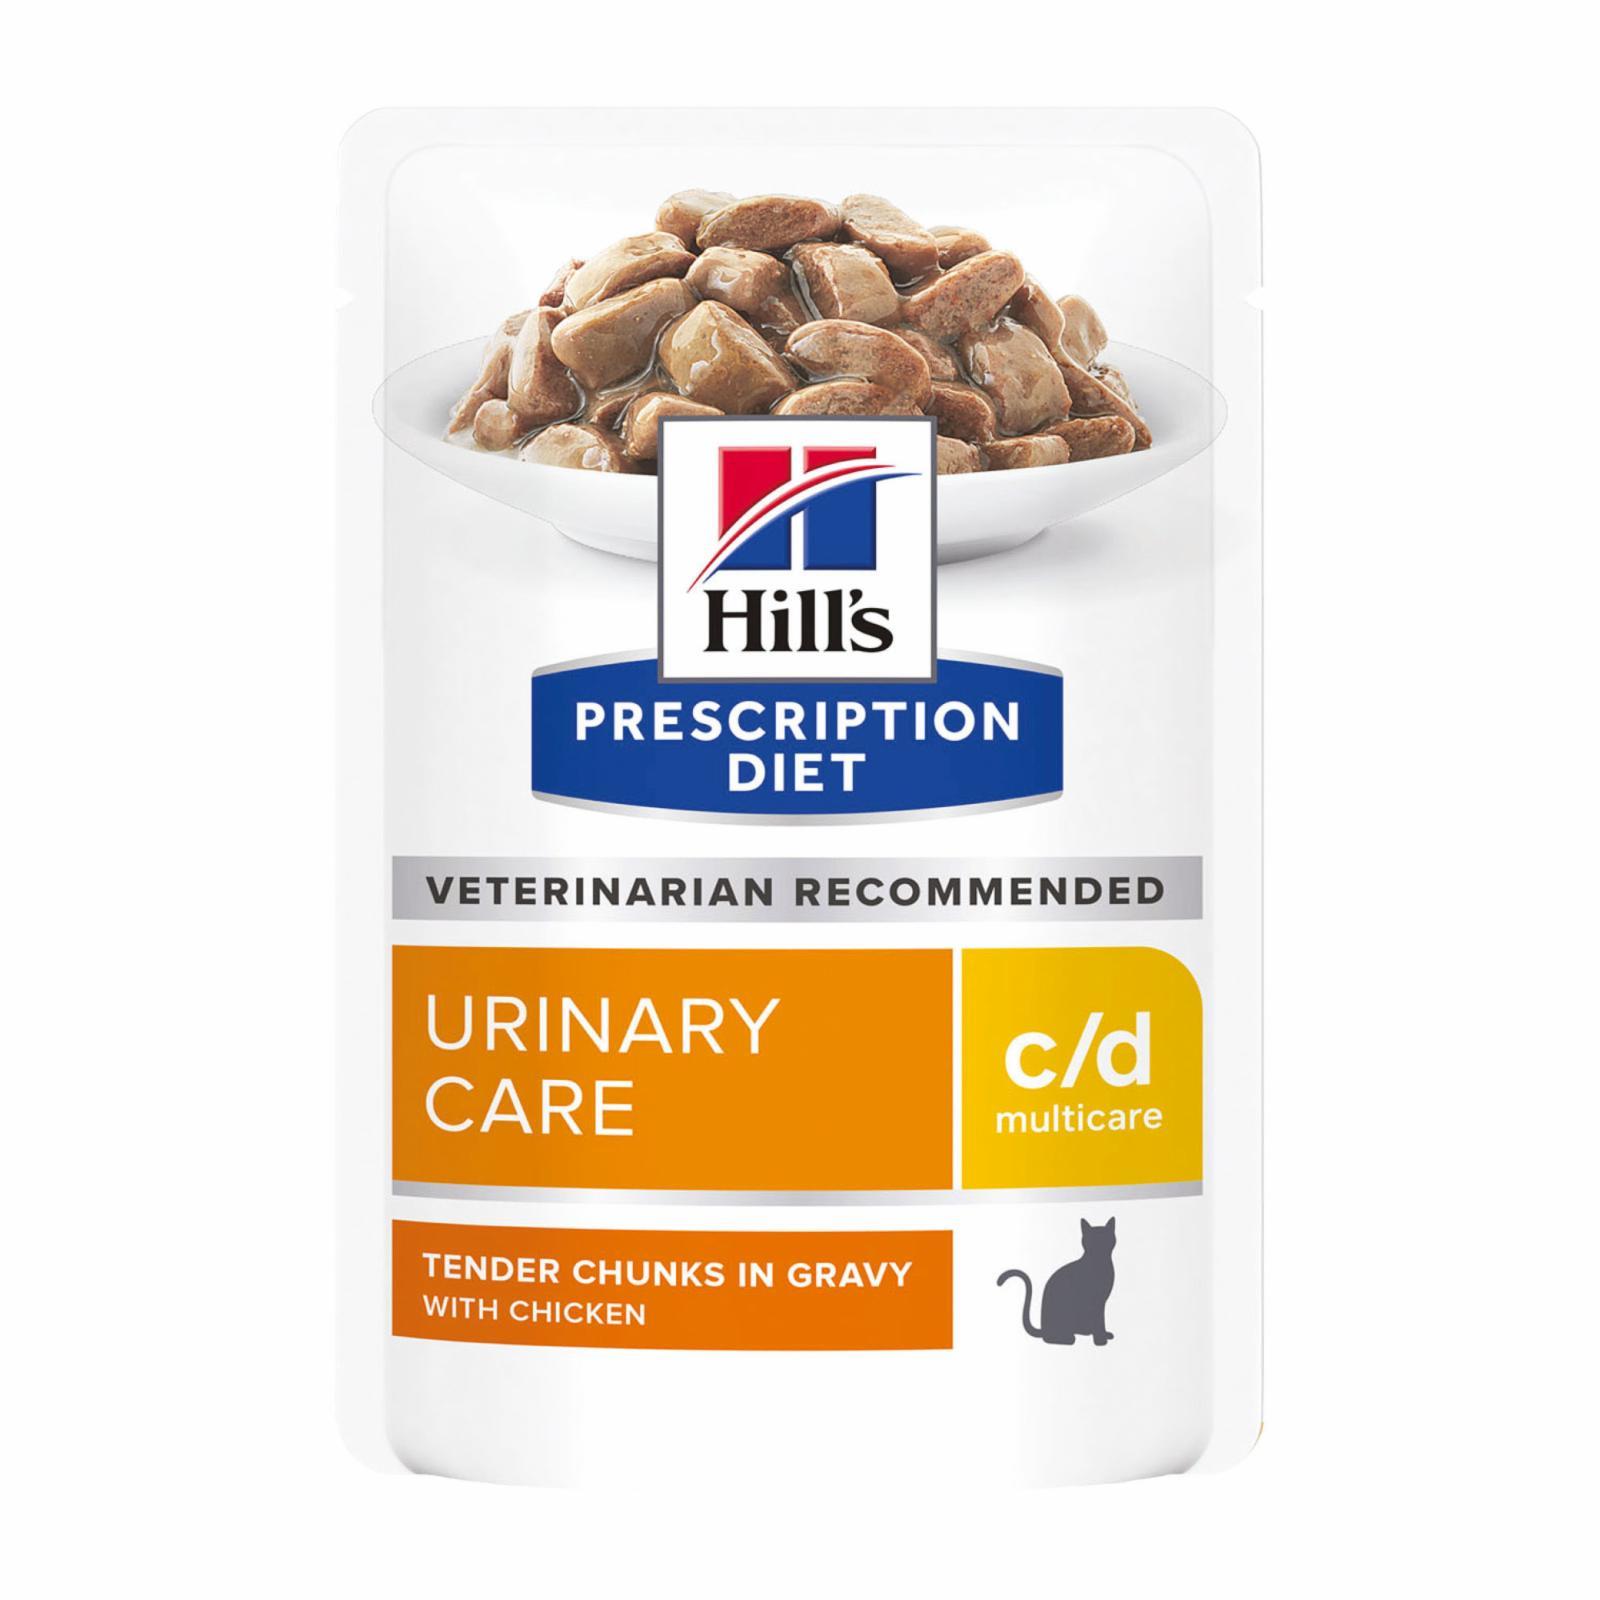 Hill's вет.консервы | Паучи C/D для кошек при профилактике МКБ с курицей (кусочки в соусе). 1 шт